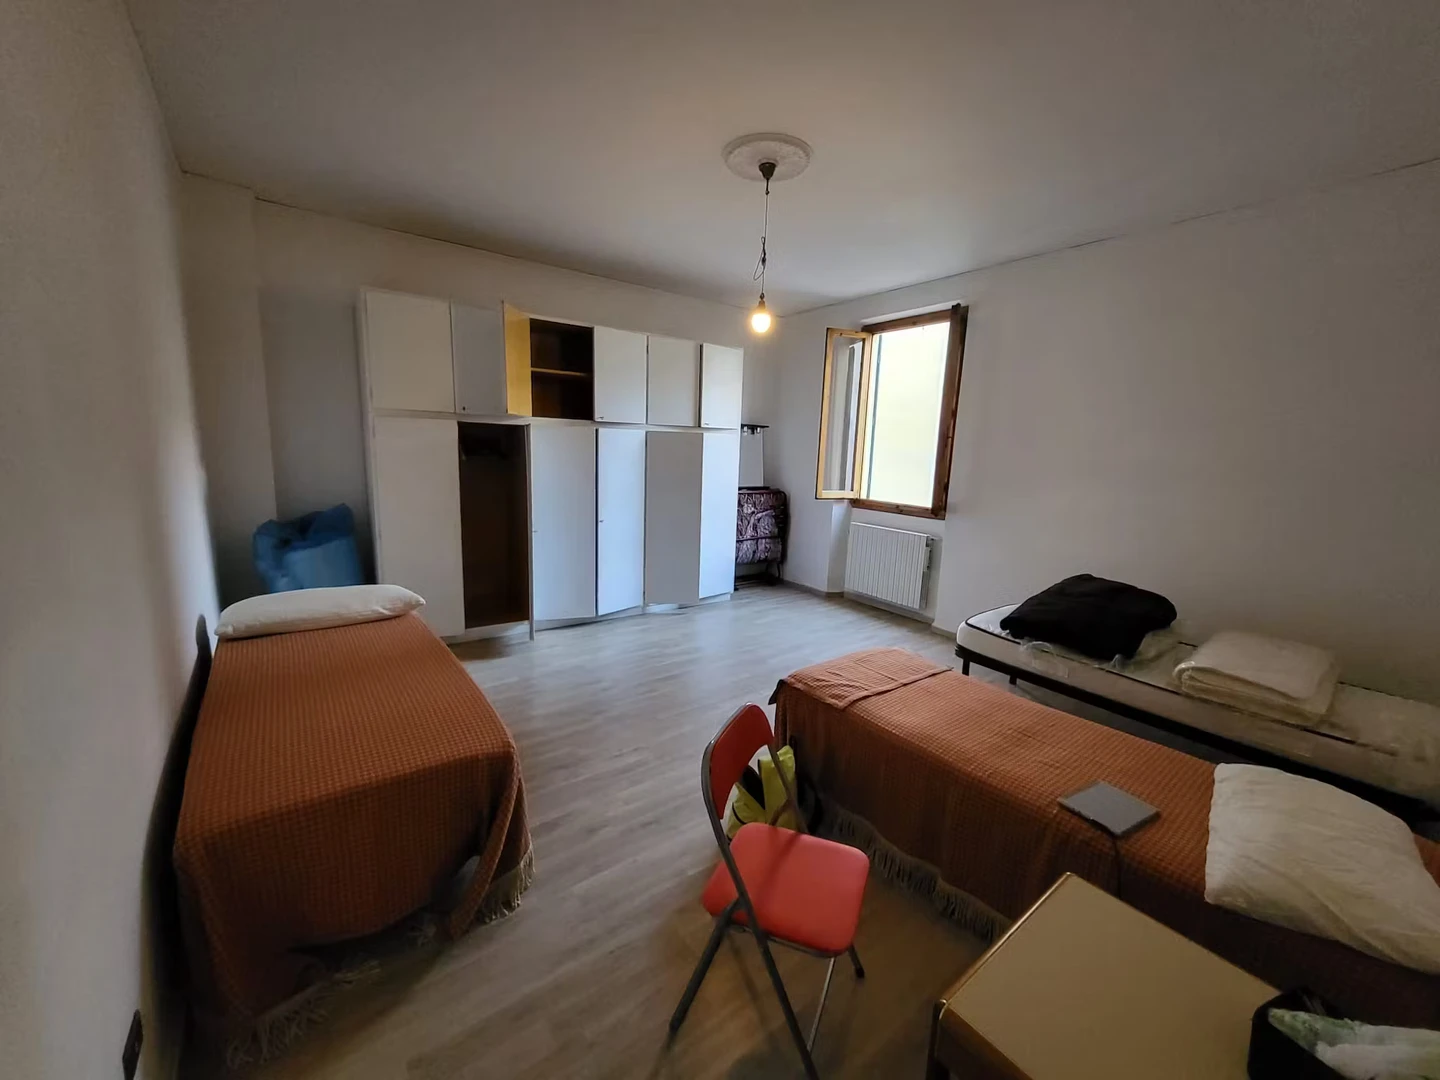 Stanza in condivisione in un appartamento di 3 camere da letto Firenze